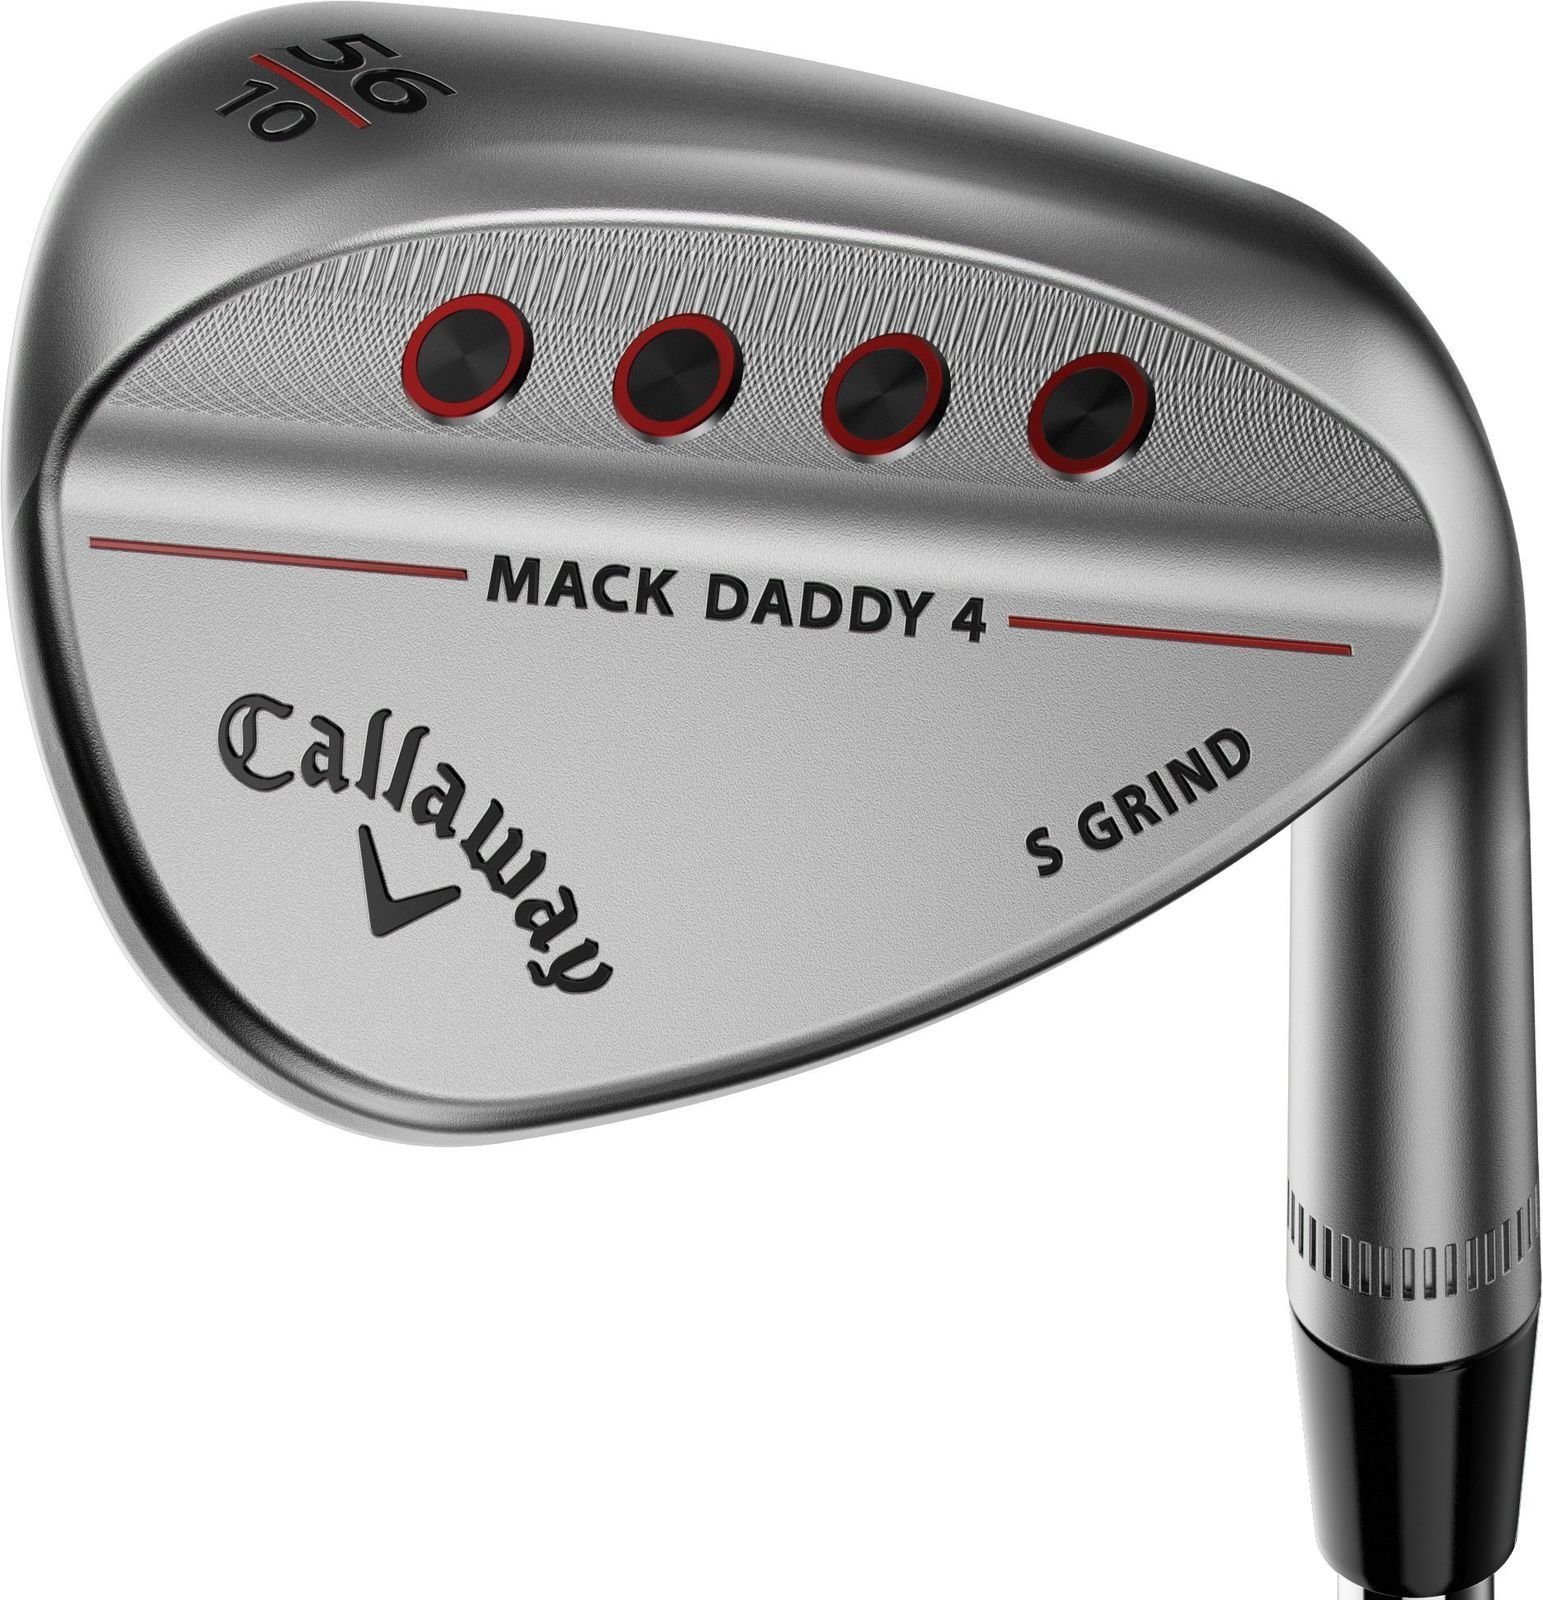 Palica za golf - wedger Callaway Mack Daddy 4 Chrome Wedge 56-10 S-Grind Left Hand